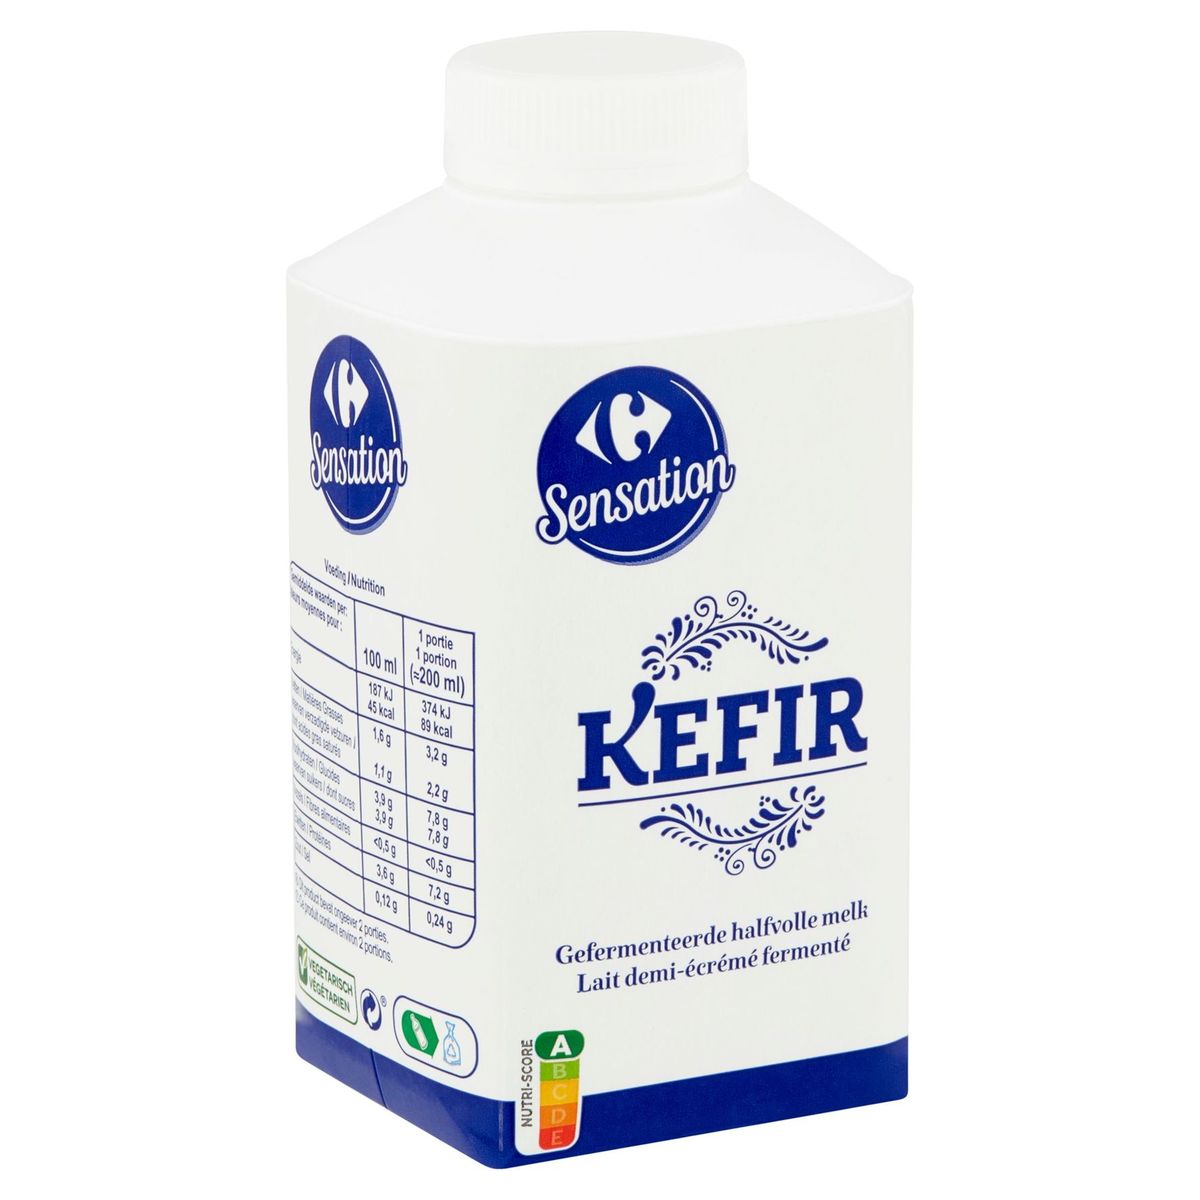 Carrefour Sensation Kefir Gefermenteerde Halfvolle Melk 500 ml